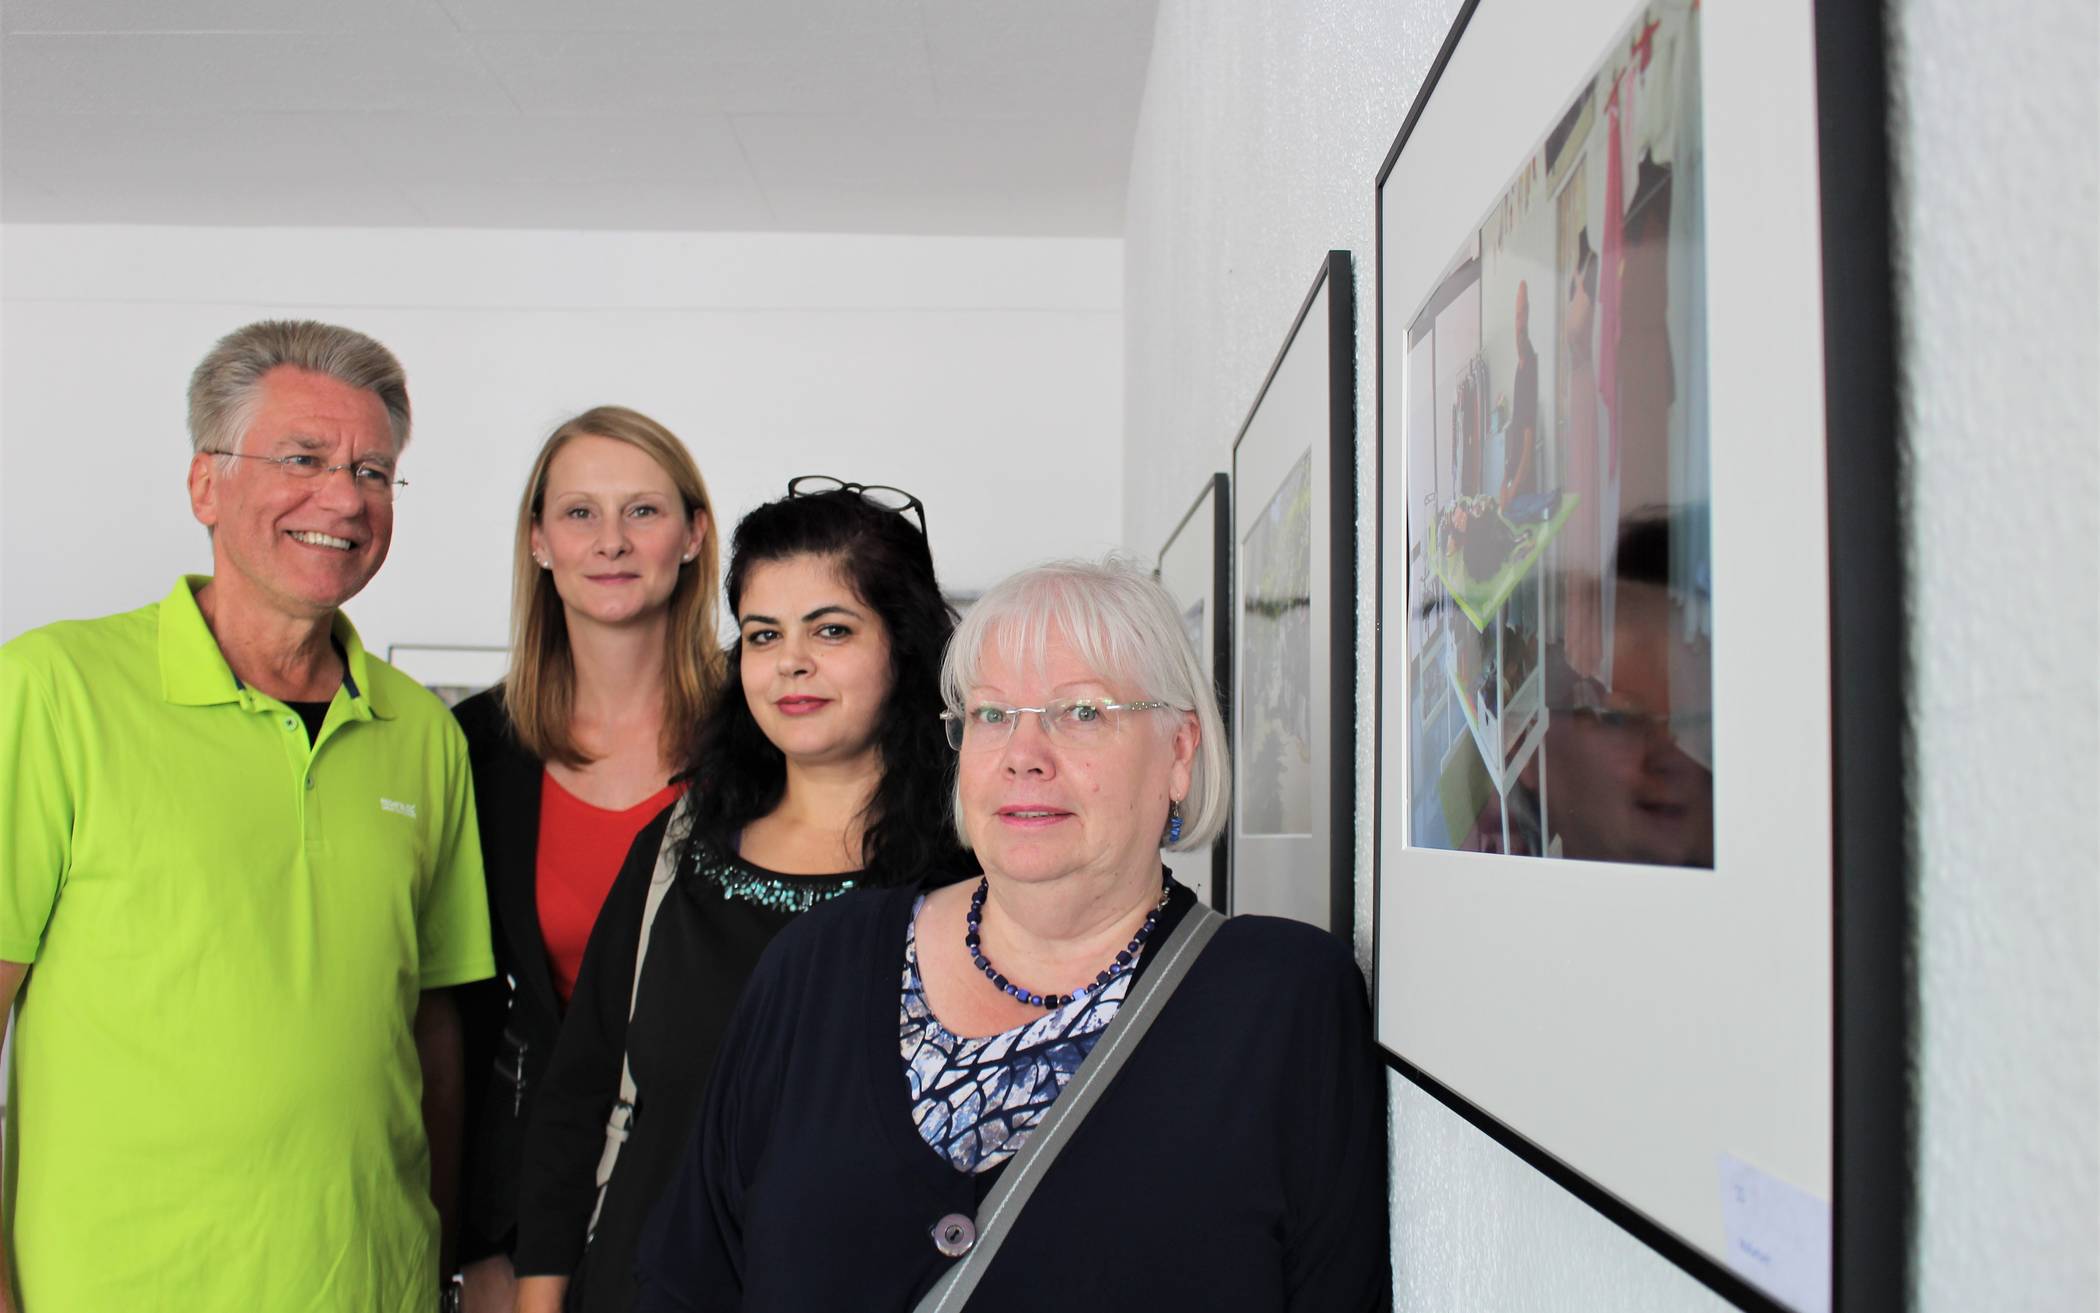  Vier der insgesamt sieben Teilnehmer des SKFM Fotoworkshops waren bei der Eröffnung der Ausstellung am Sandheider Markt anwesend. V.l. Bernhard Janich, Nina Frensch, Mai Merhij und Ulrike Winkelhane. 